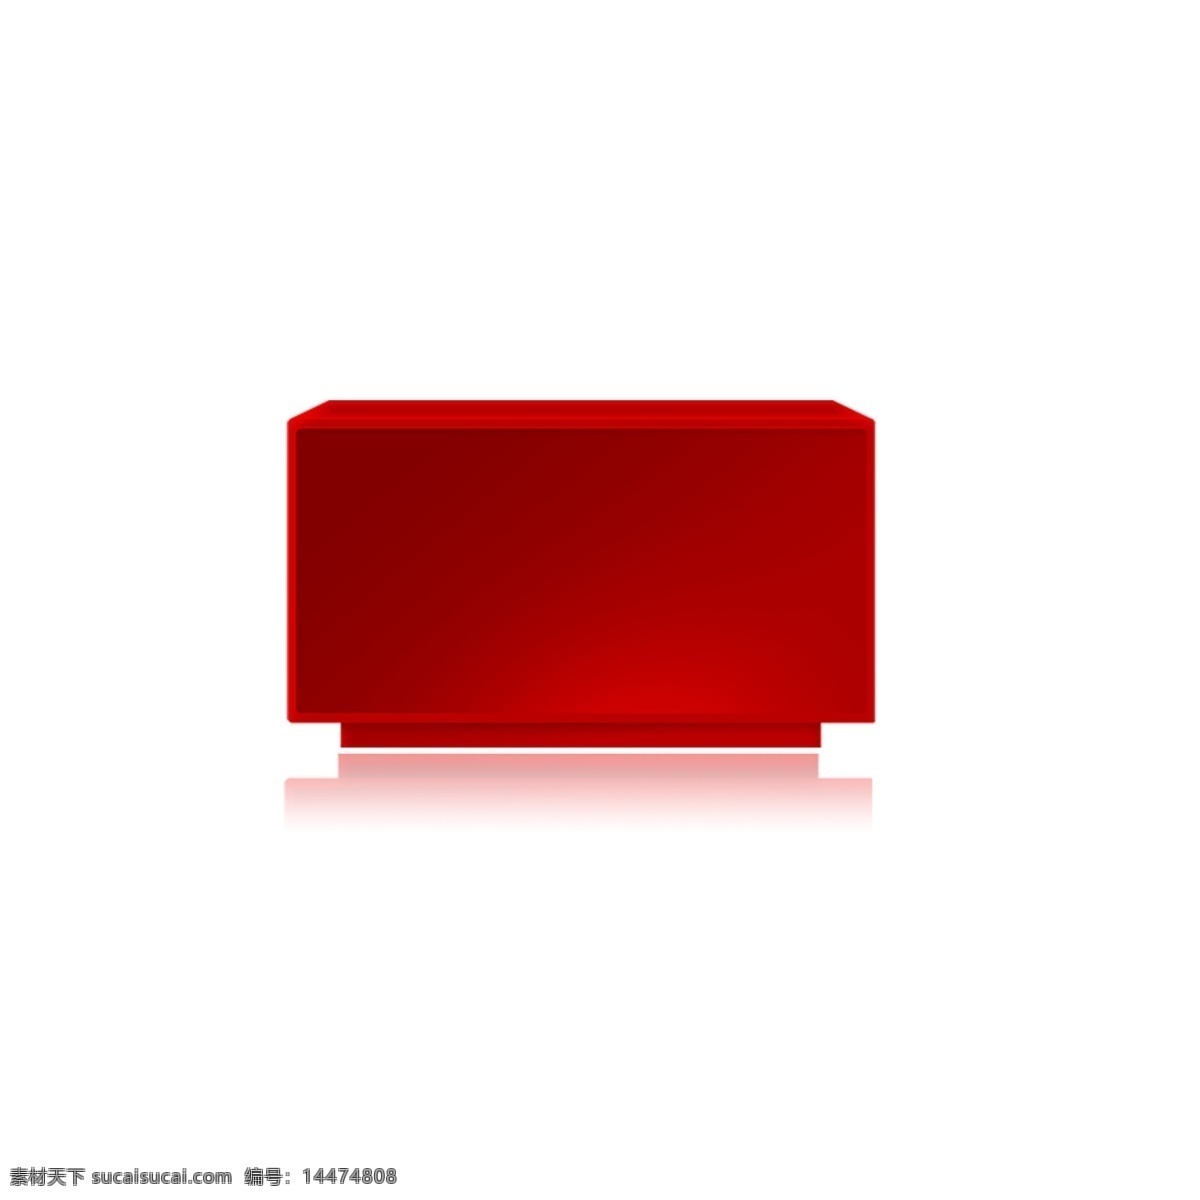 红色 立体 方块 免 抠 图 红色箱子 3d立体箱子 卡通图案 卡通插画 时尚框架 免抠图